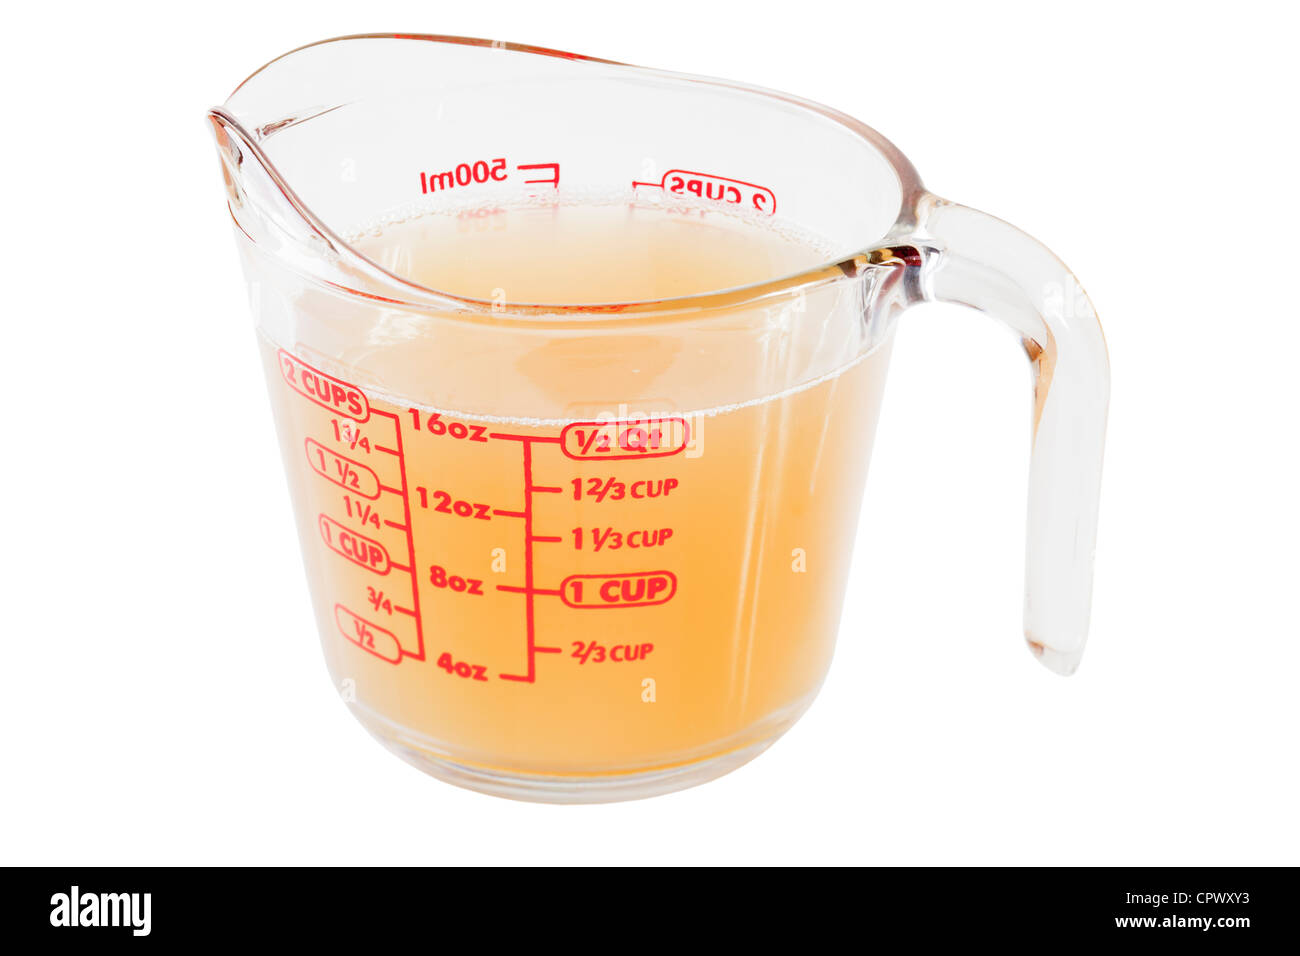 Eine Messung von Glas Krug mit Hühnerbrühe, die Grundlage für jede gute hausgemachte Suppe. Stockfoto